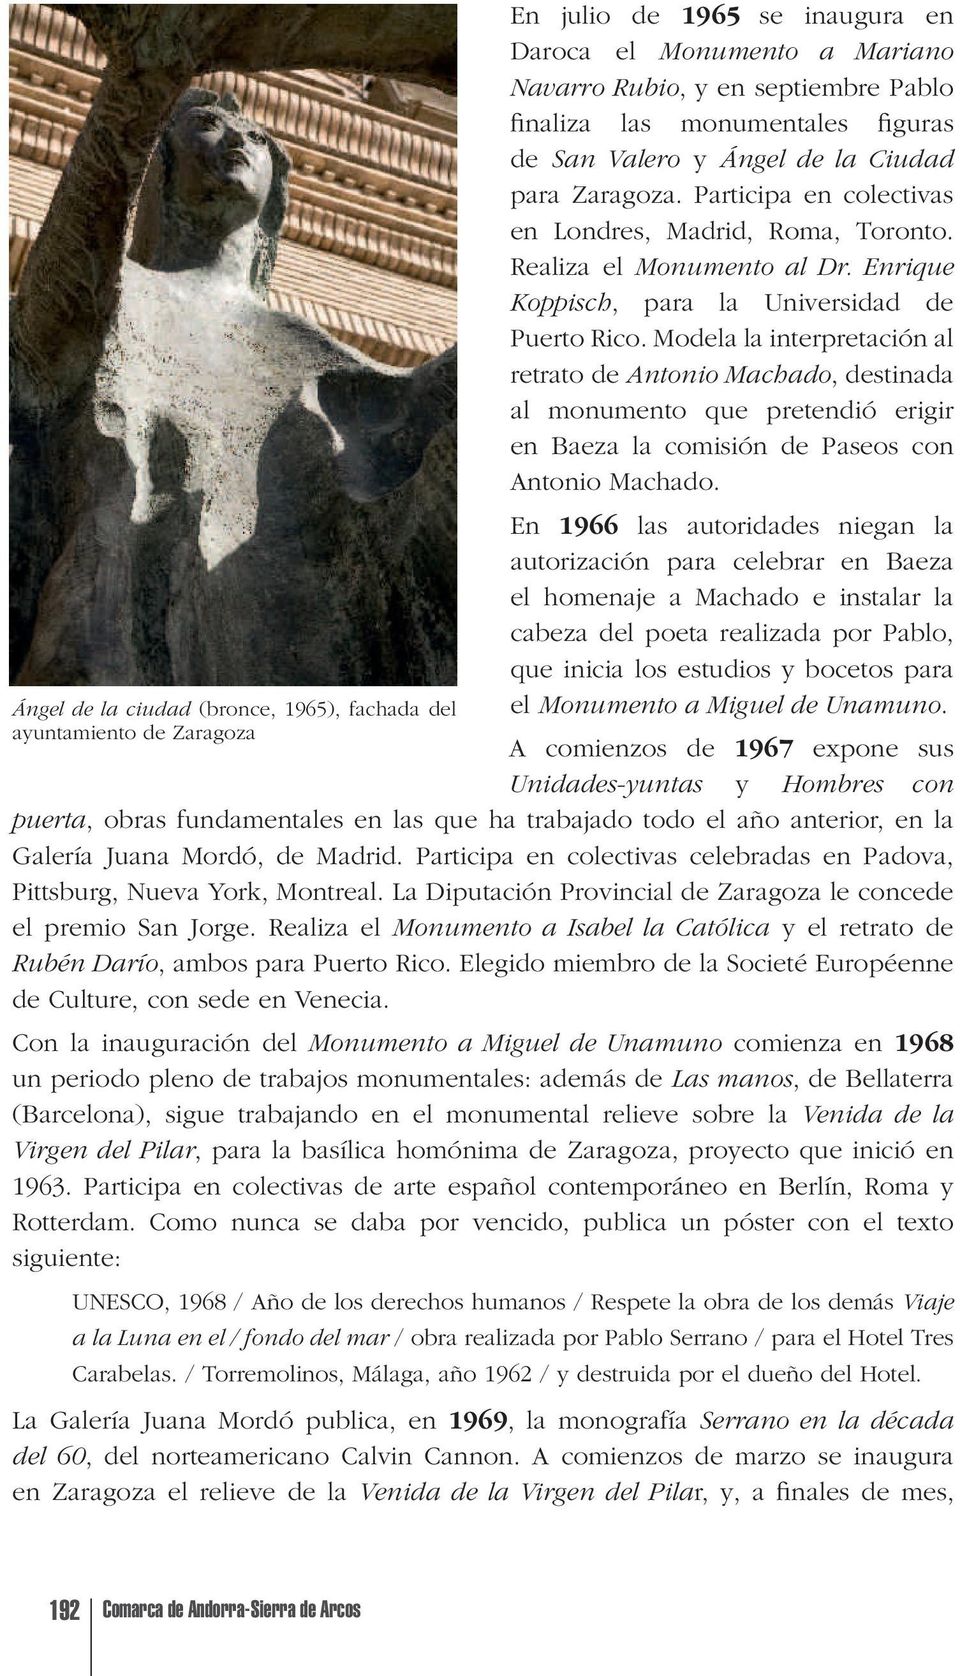 Modela la interpretación al retrato de Antonio Machado, destinada al monumento que pretendió erigir en Baeza la comisión de Paseos con Antonio Machado.